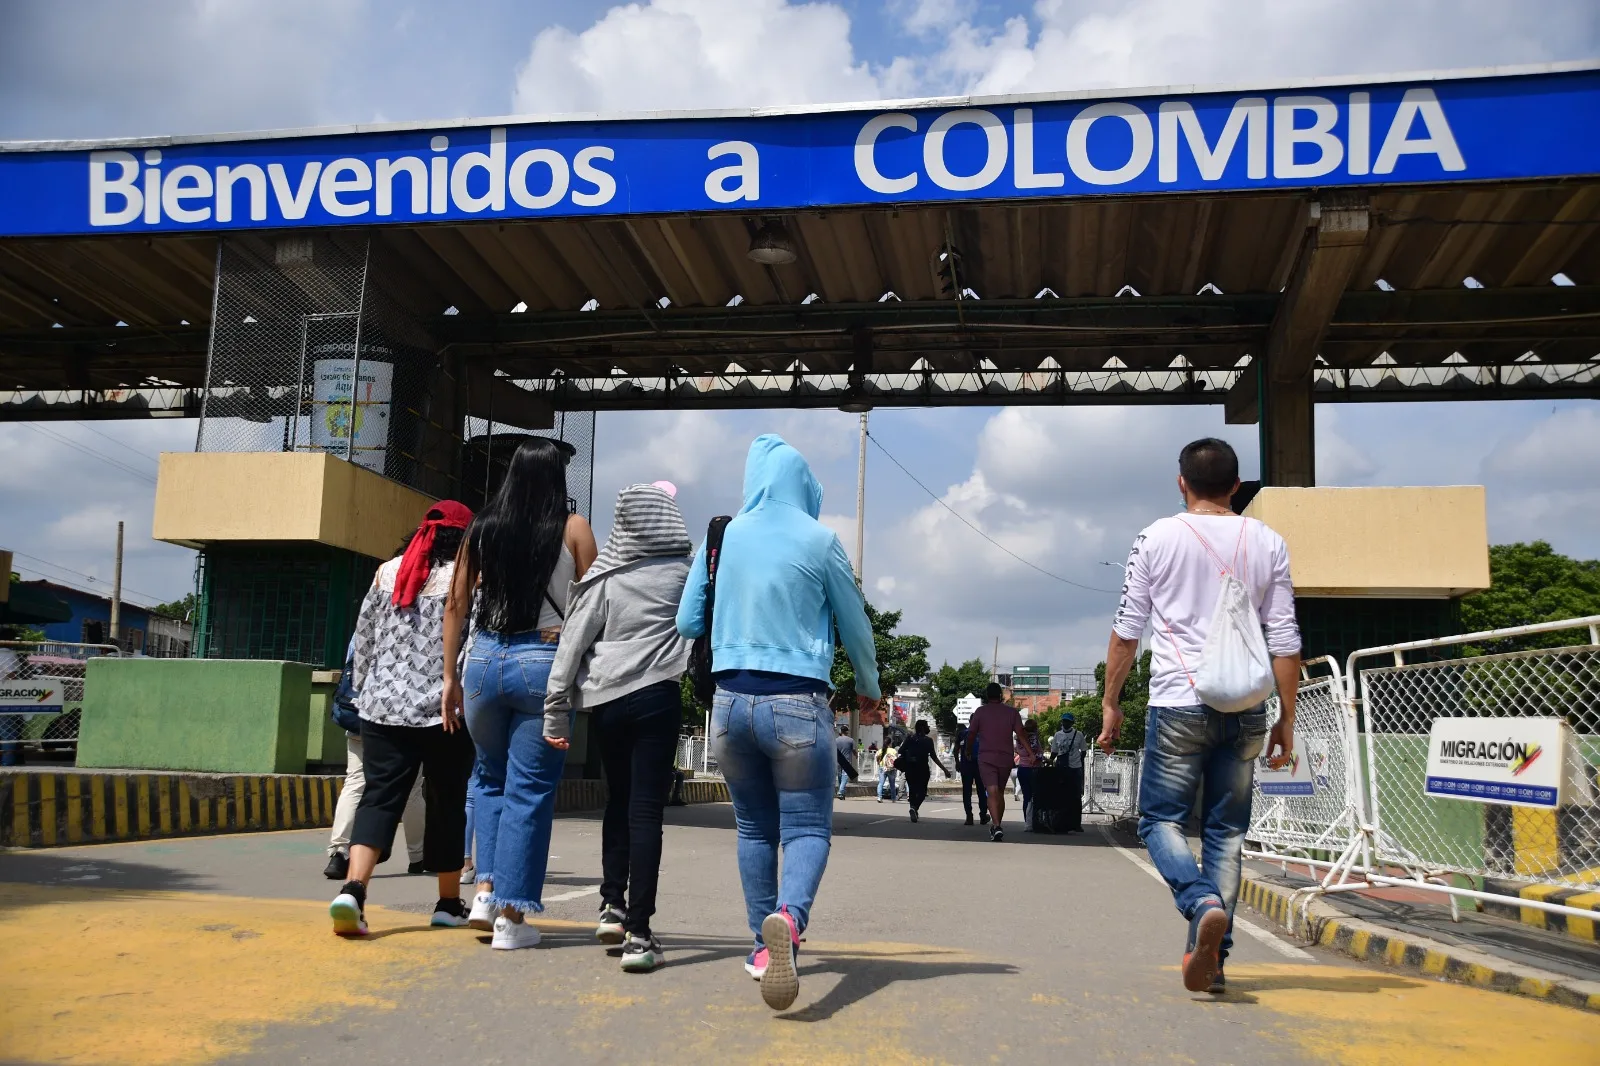 El Huila ha acogido a más de 13 mil venezolanos